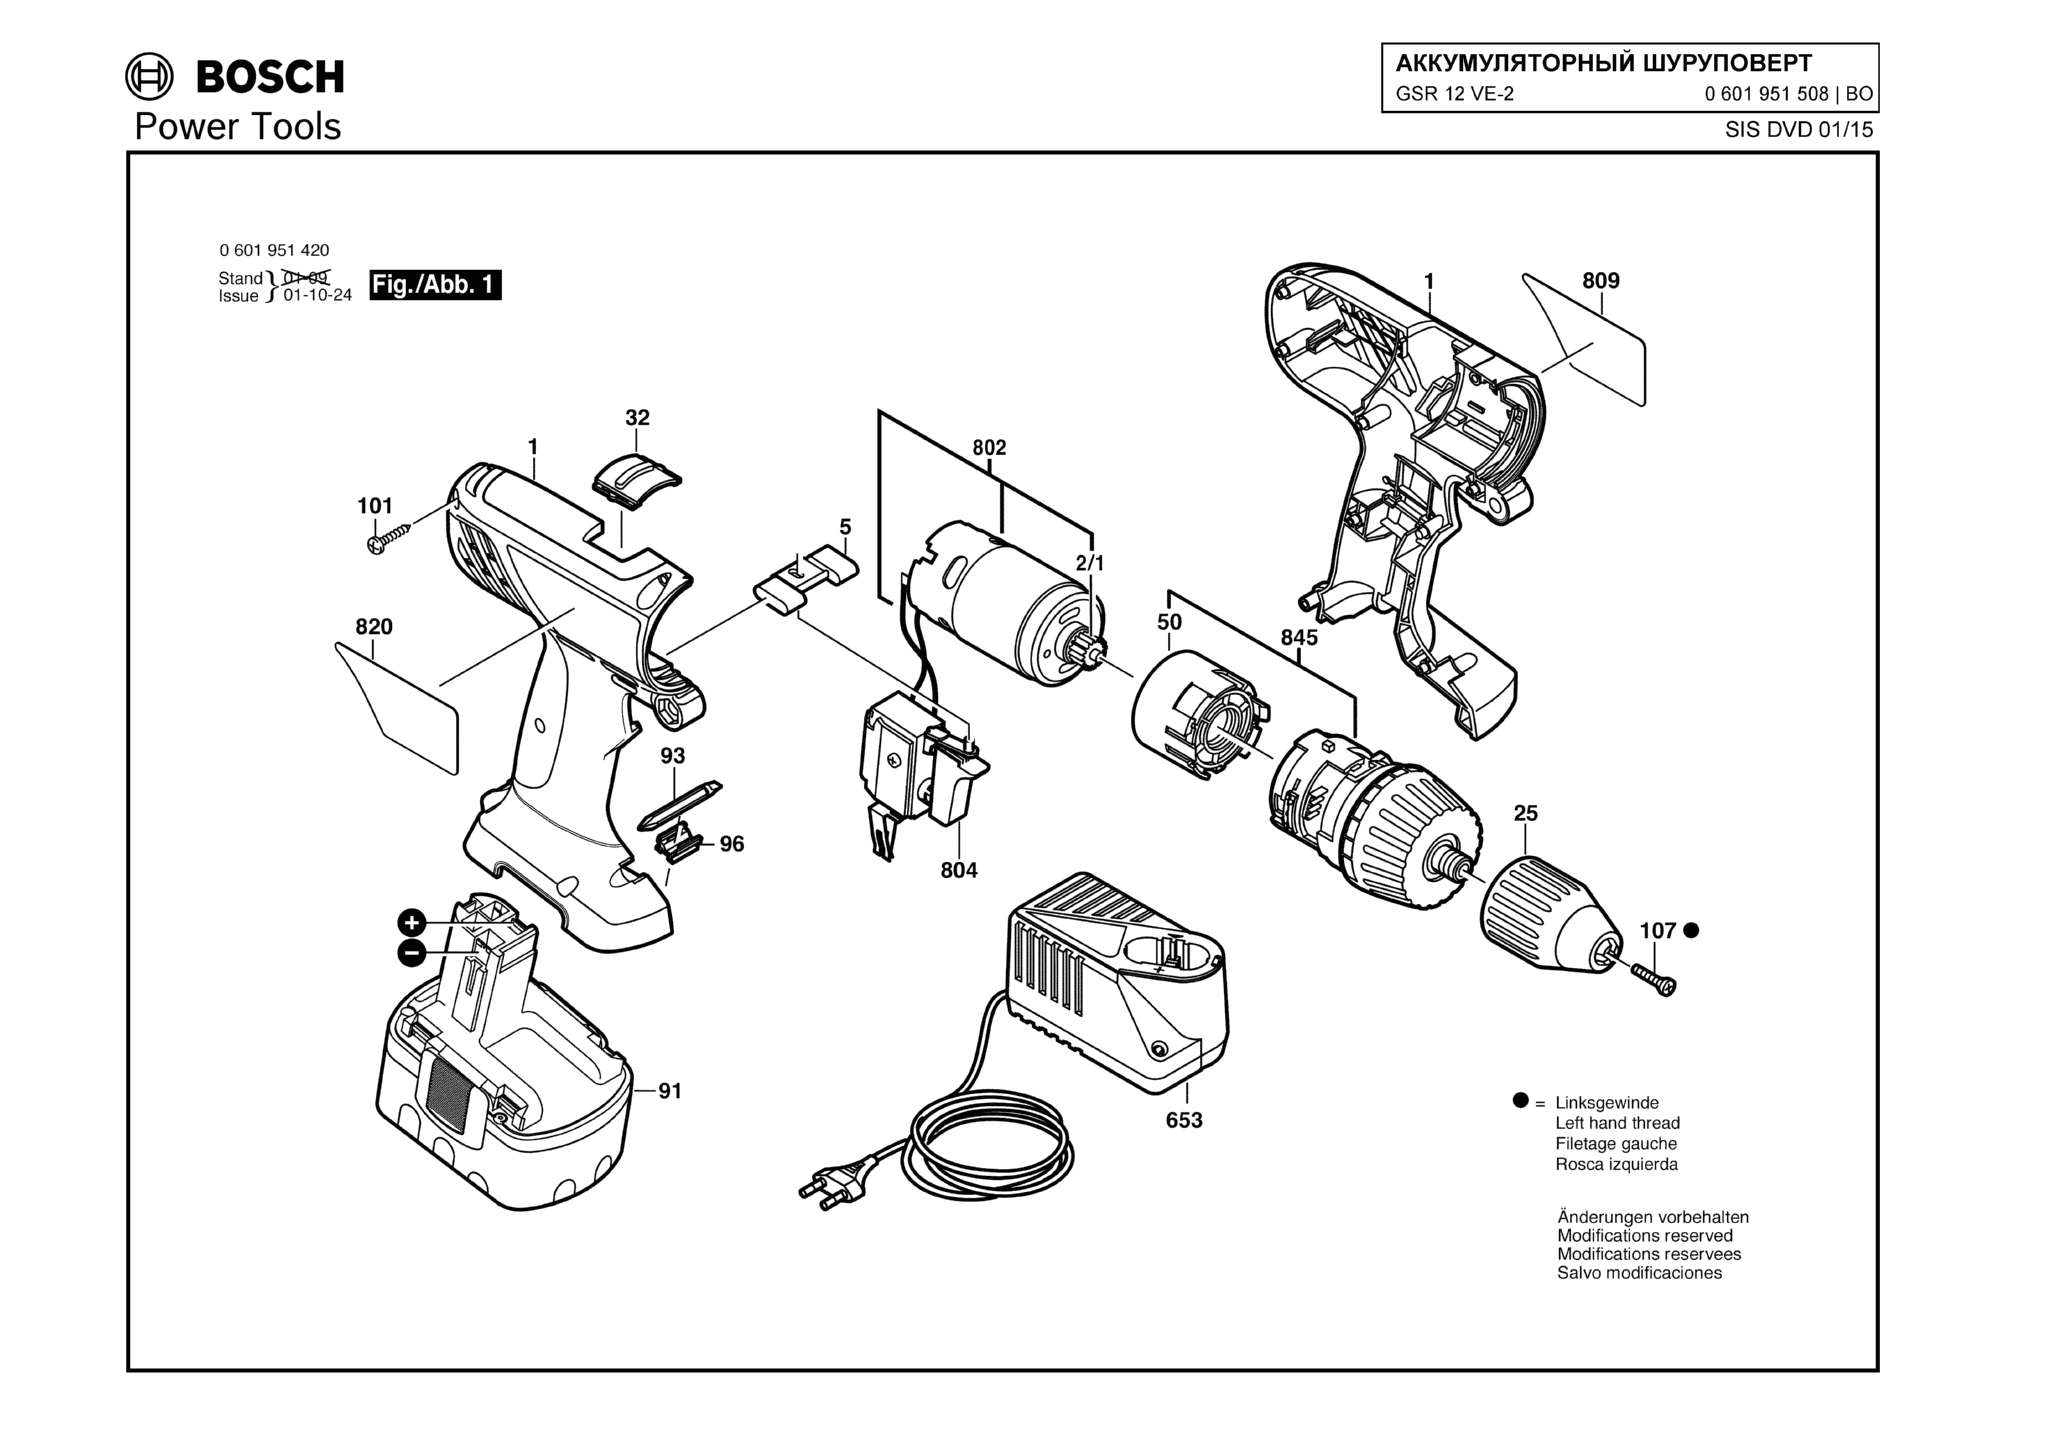 Запчасти, схема и деталировка Bosch GSR 12 VE-2 (ТИП 0601951508)